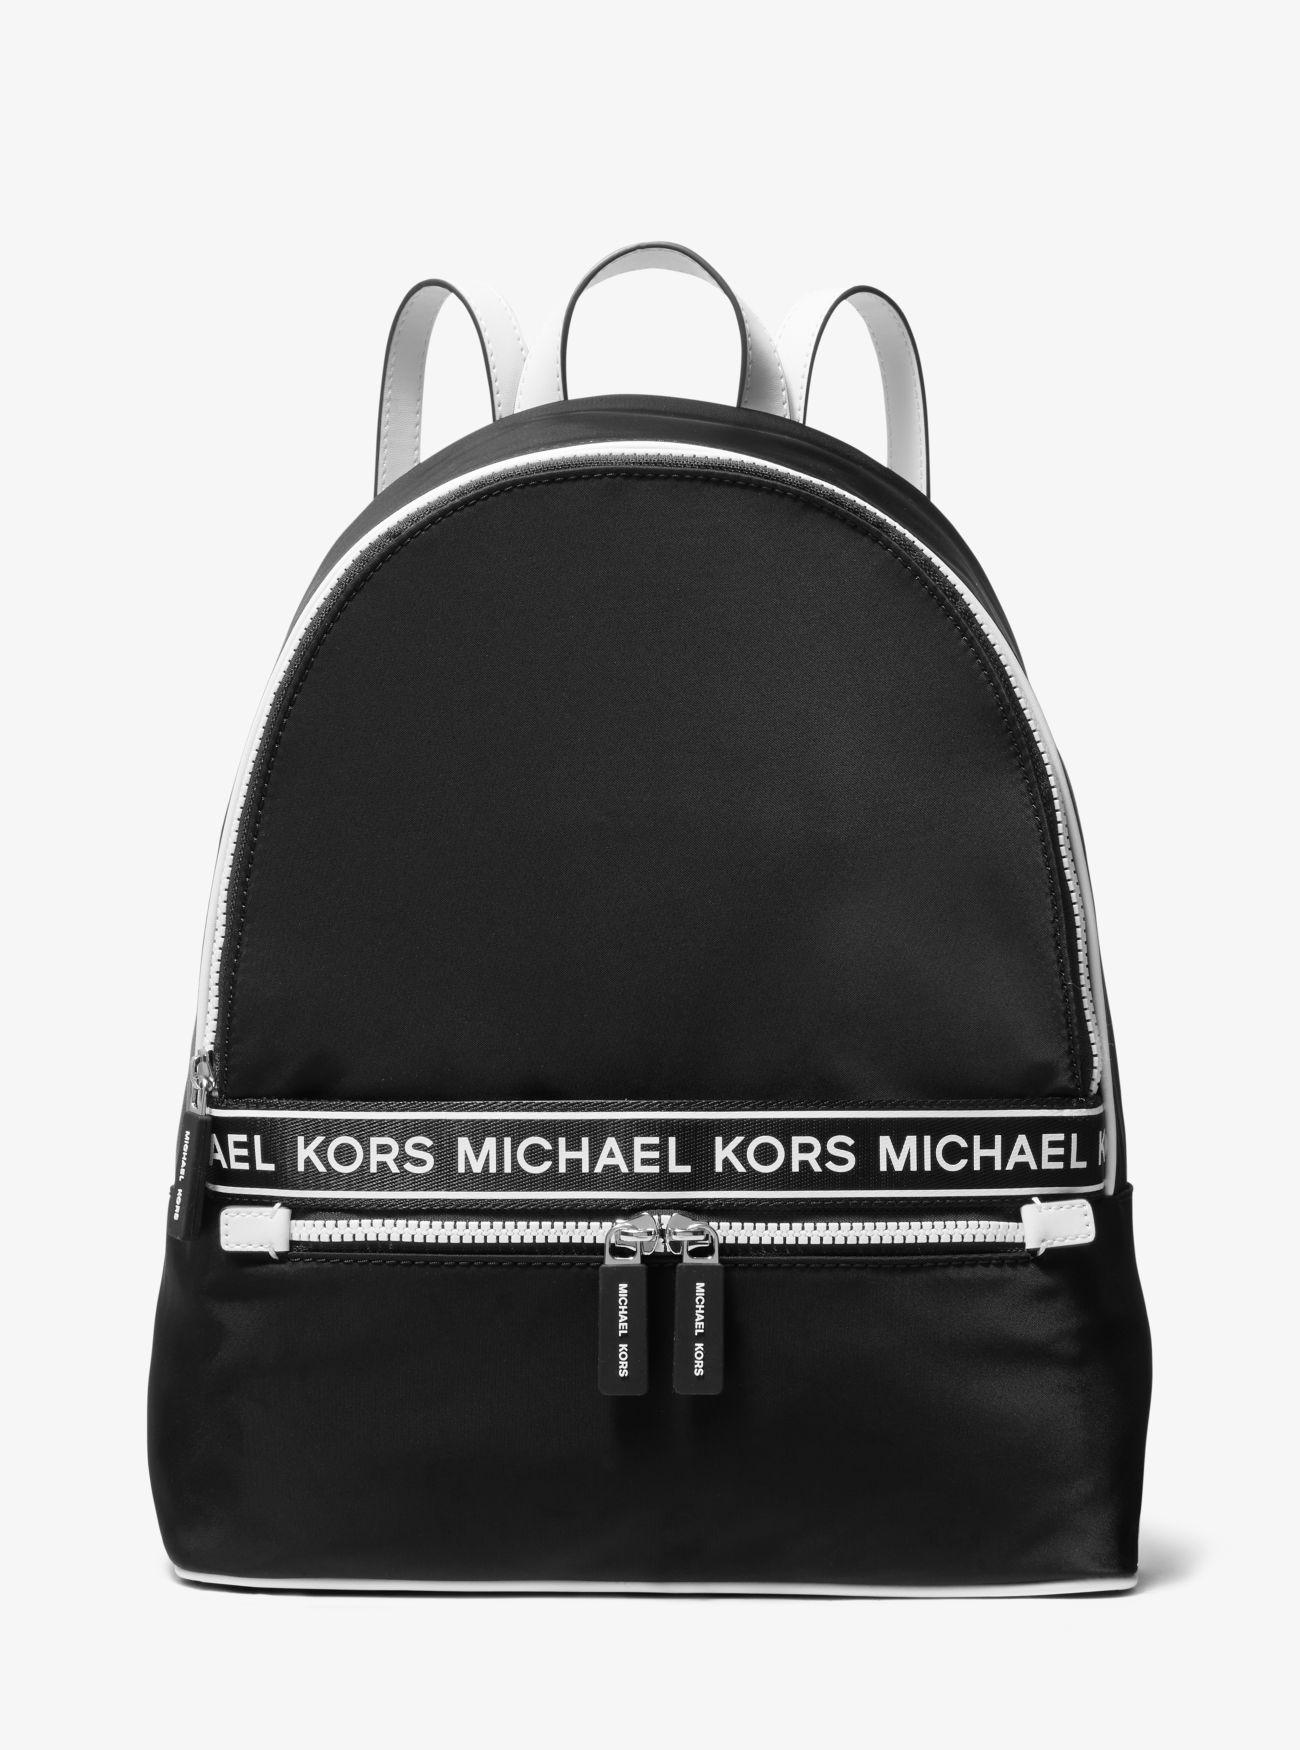 Michael Kors Kenly Large Signature Logo Tape Tote Bag